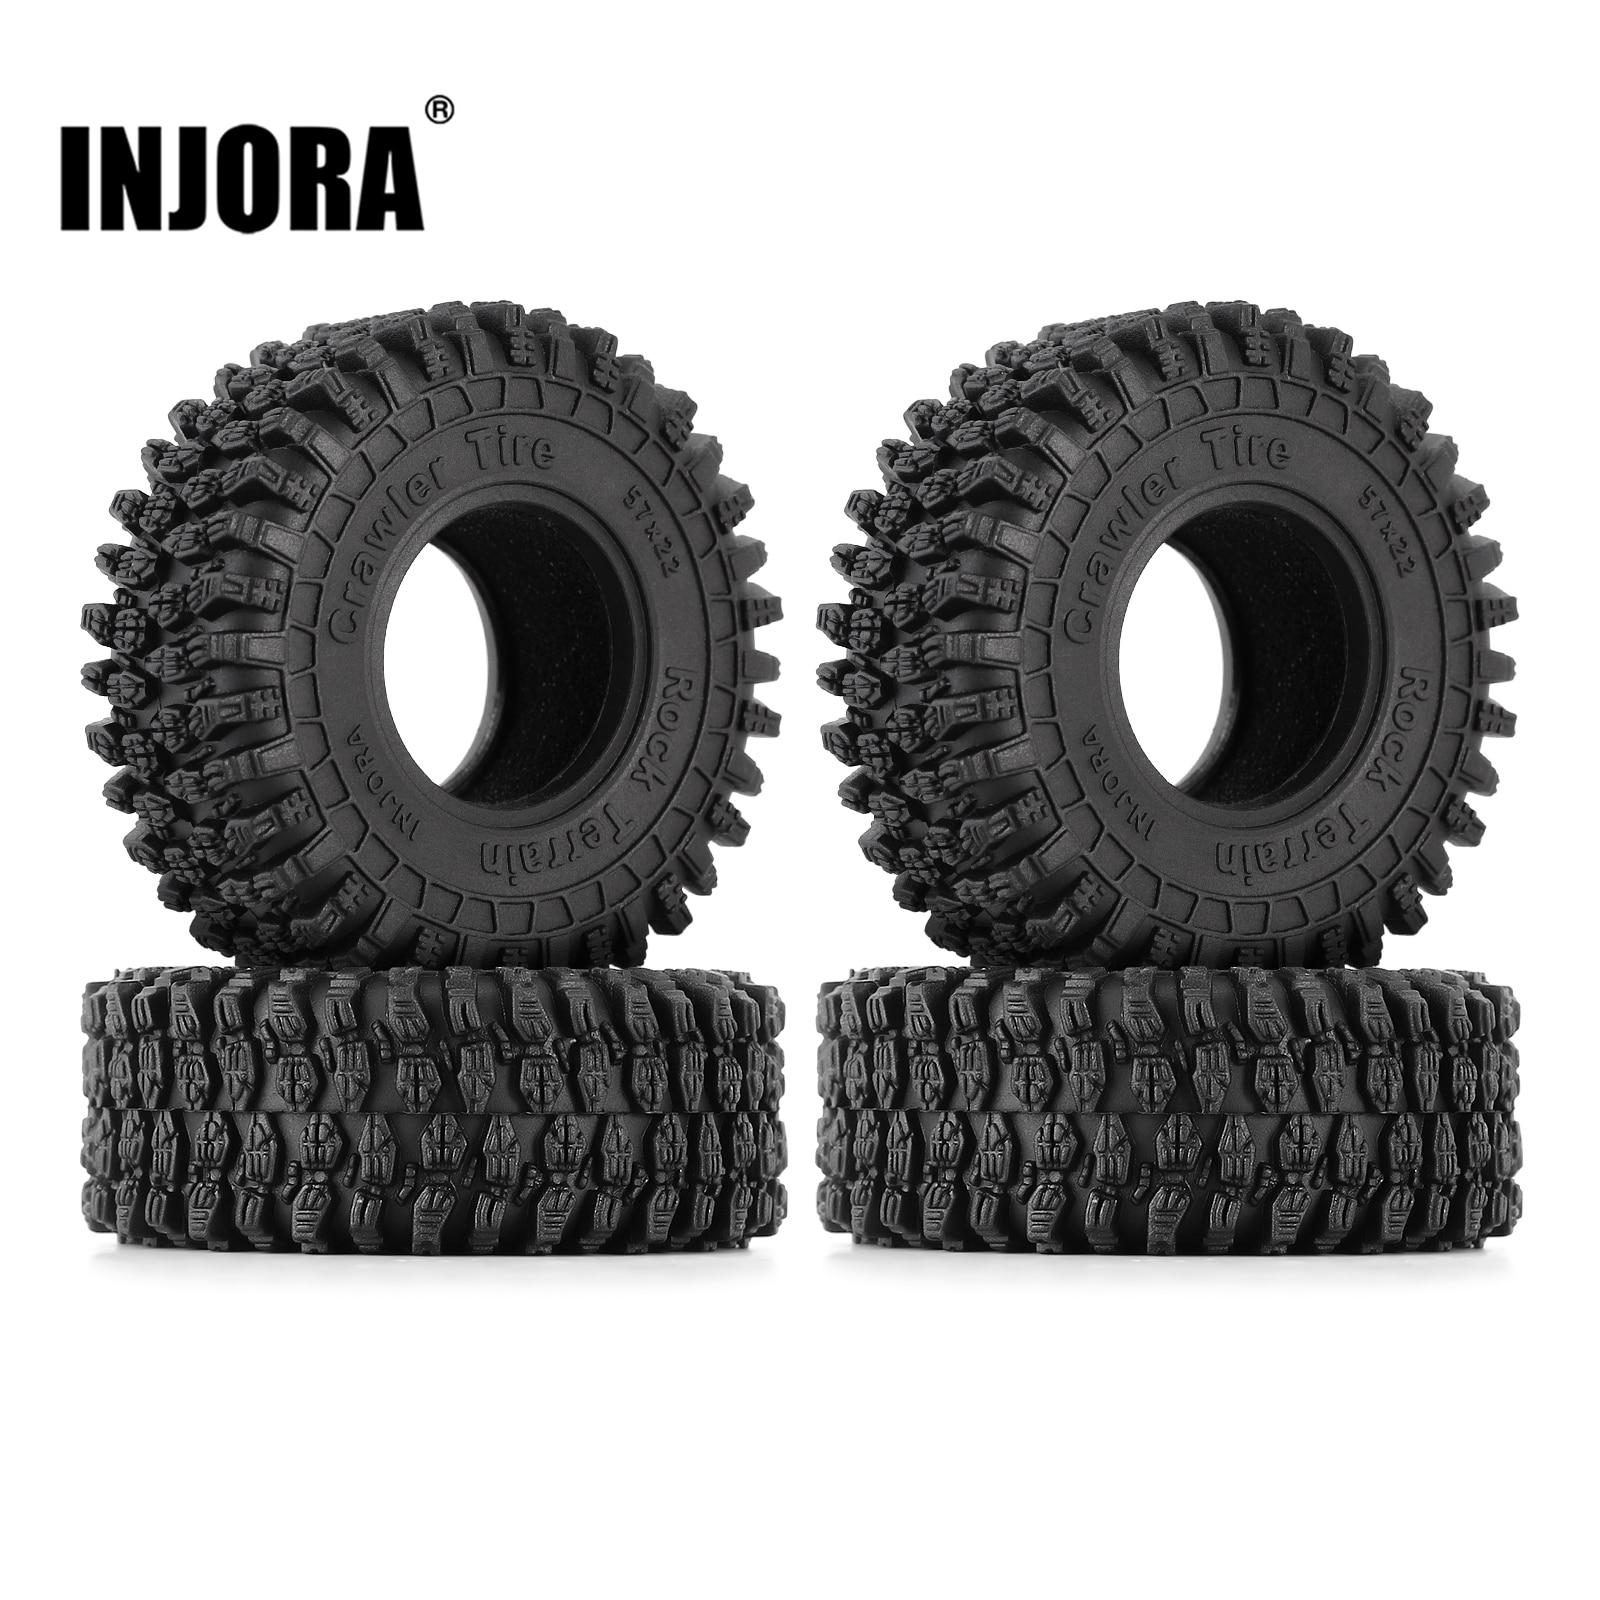 INJORA-57-22mm-Super-Soft-Sticky-1-0-Wheel-Tires-for-1-18-1-24-RC.jpg